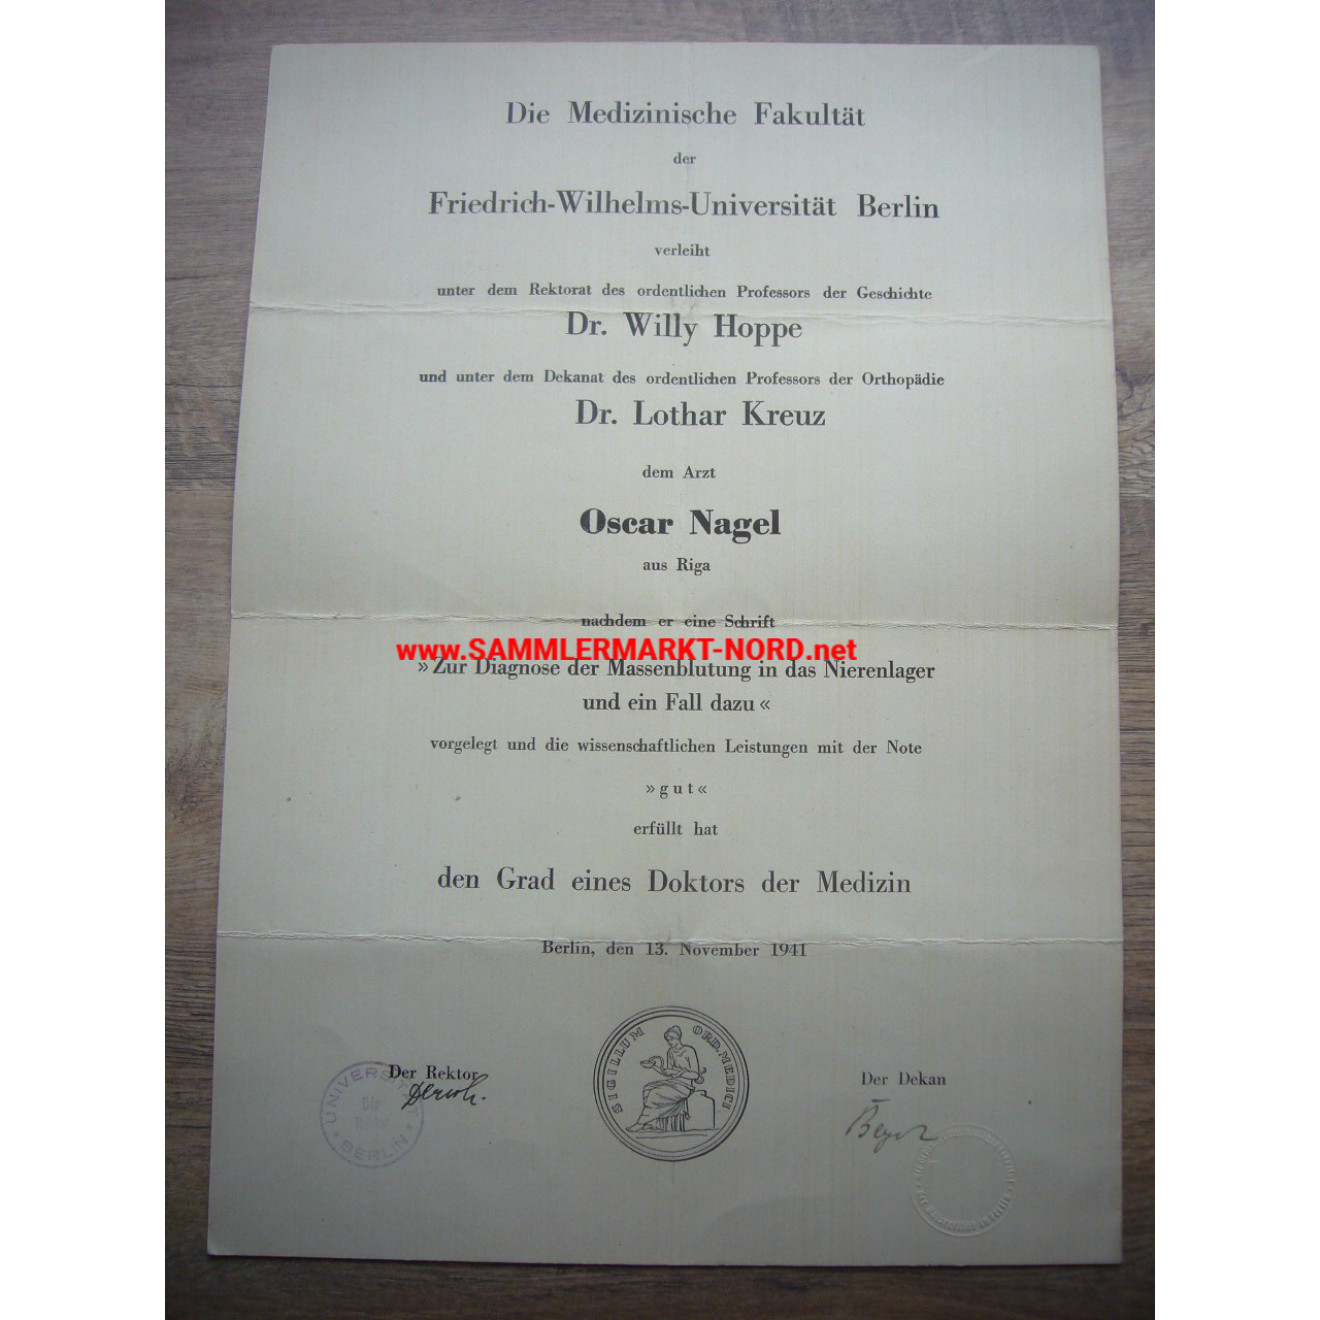 Large doctorate certificate - Doctor Oscar Nagel (Riga) - Berlin 1941